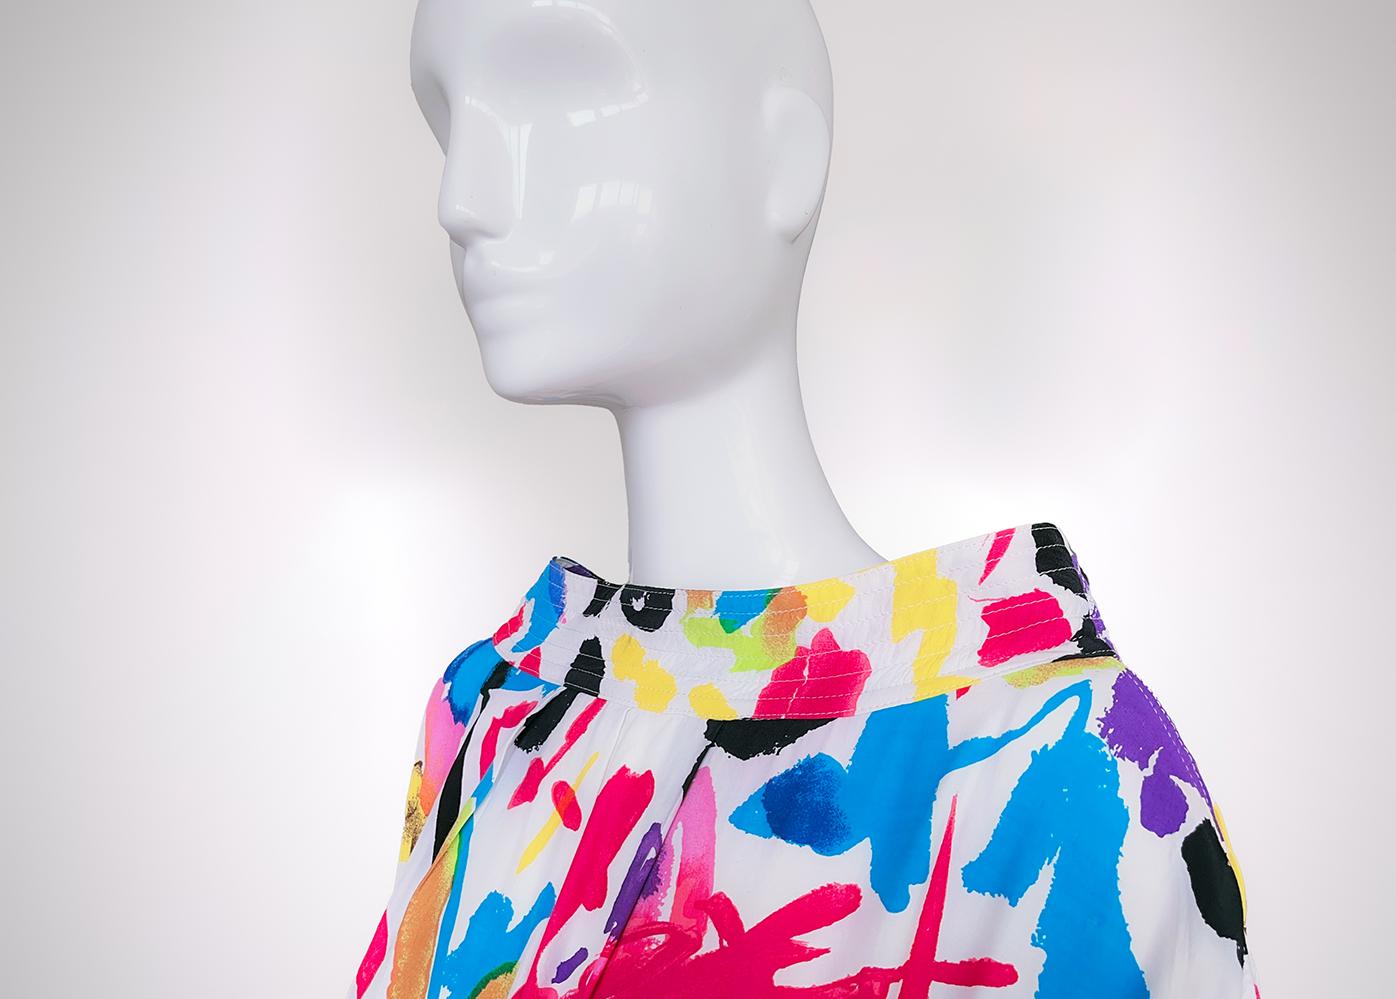 Ein sehr seltenes Baumwollkleid von Thierry Mugler, Collection'S von 1986. Typisches abstraktes Muster der 80er Jahre. 
Ich liebe diese leuchtenden Farben und die schlichte, minimalistische, aber auch schön gestaltete Form des Kleides. Der